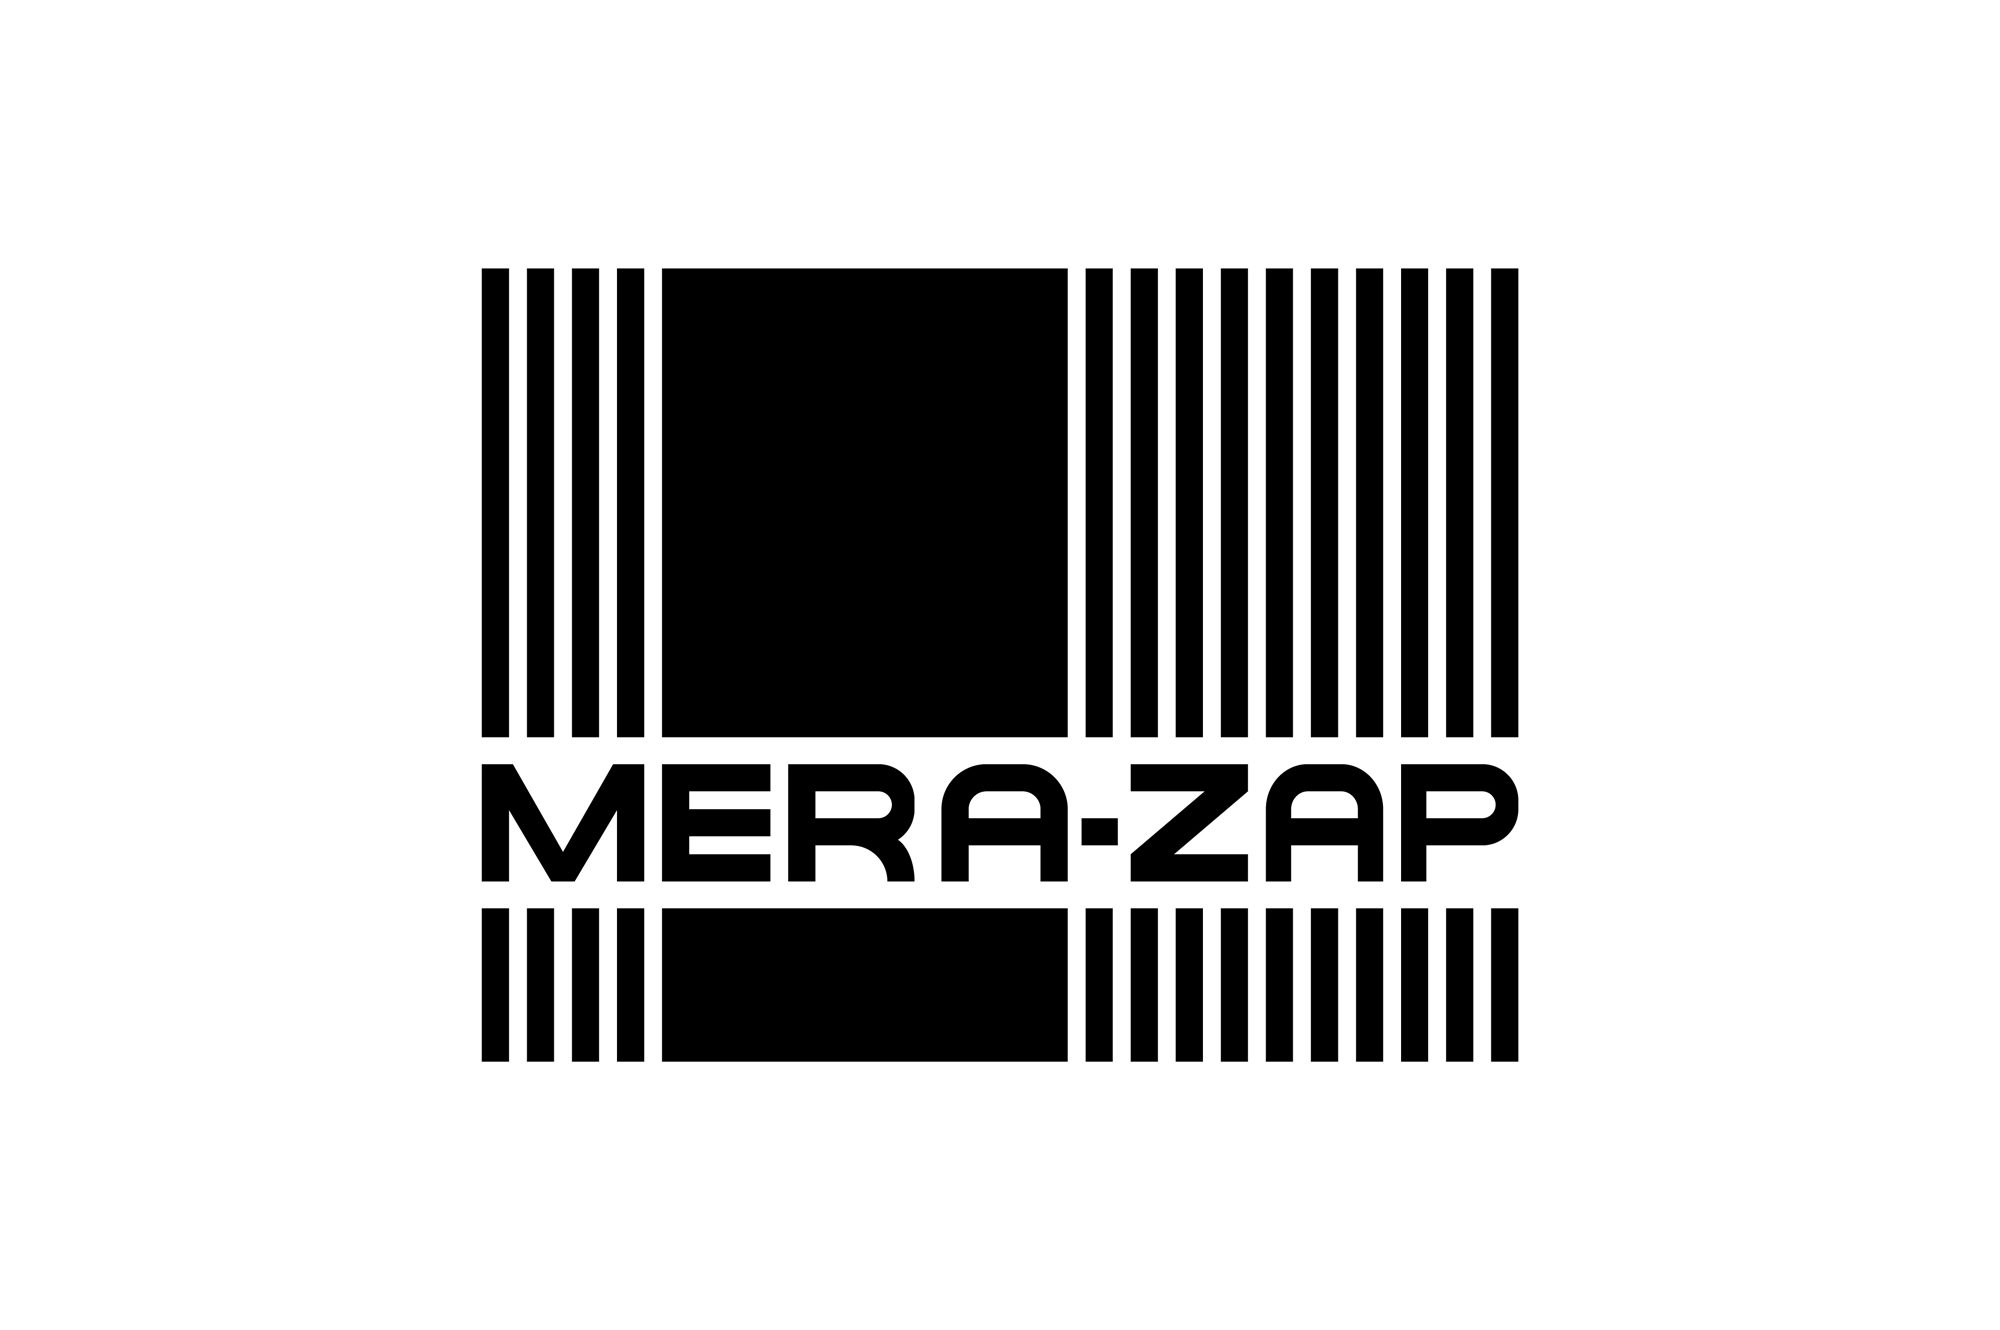 MERA-ZAP - logo PLANSZA 30x30cm EDYCJA